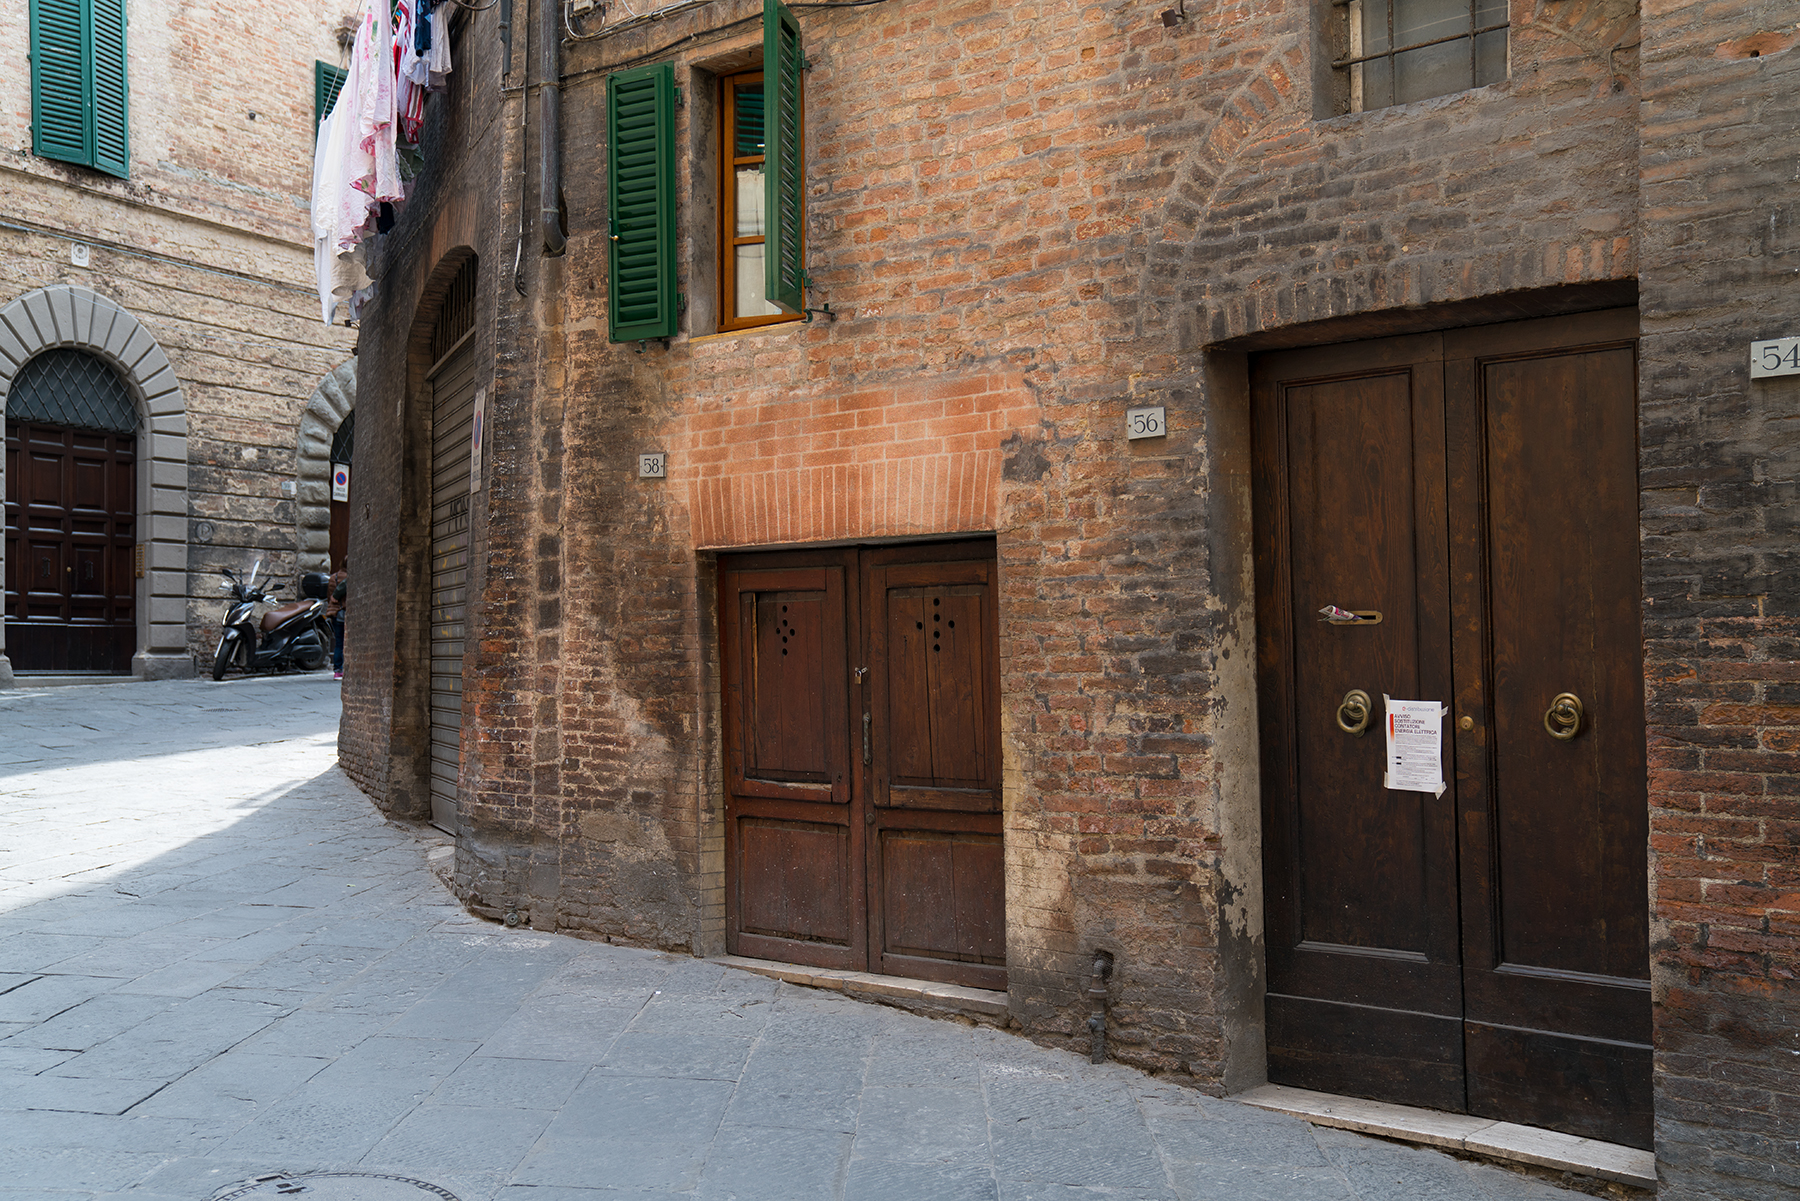 Altstadt Siena